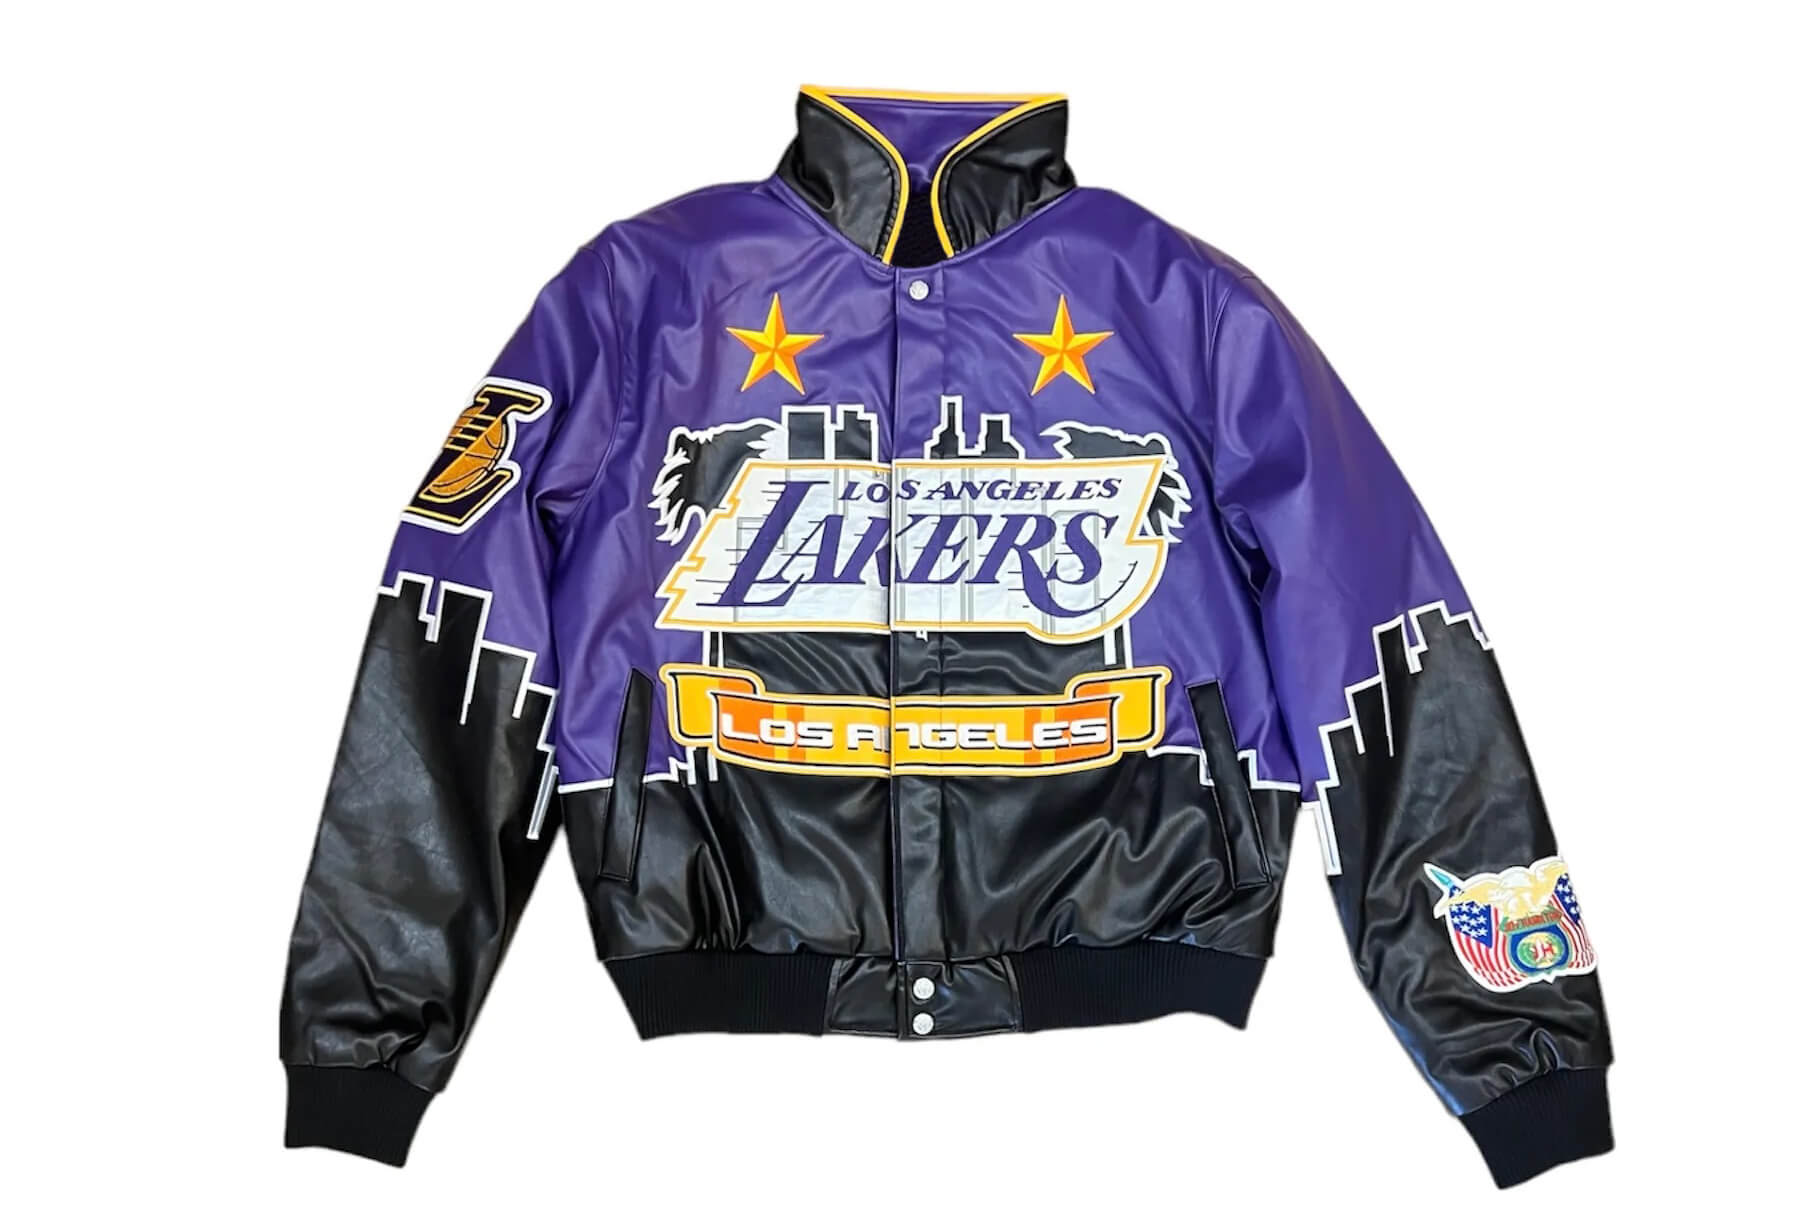 Los Angeles Lakers bomber jacket, Jeff Hamilton